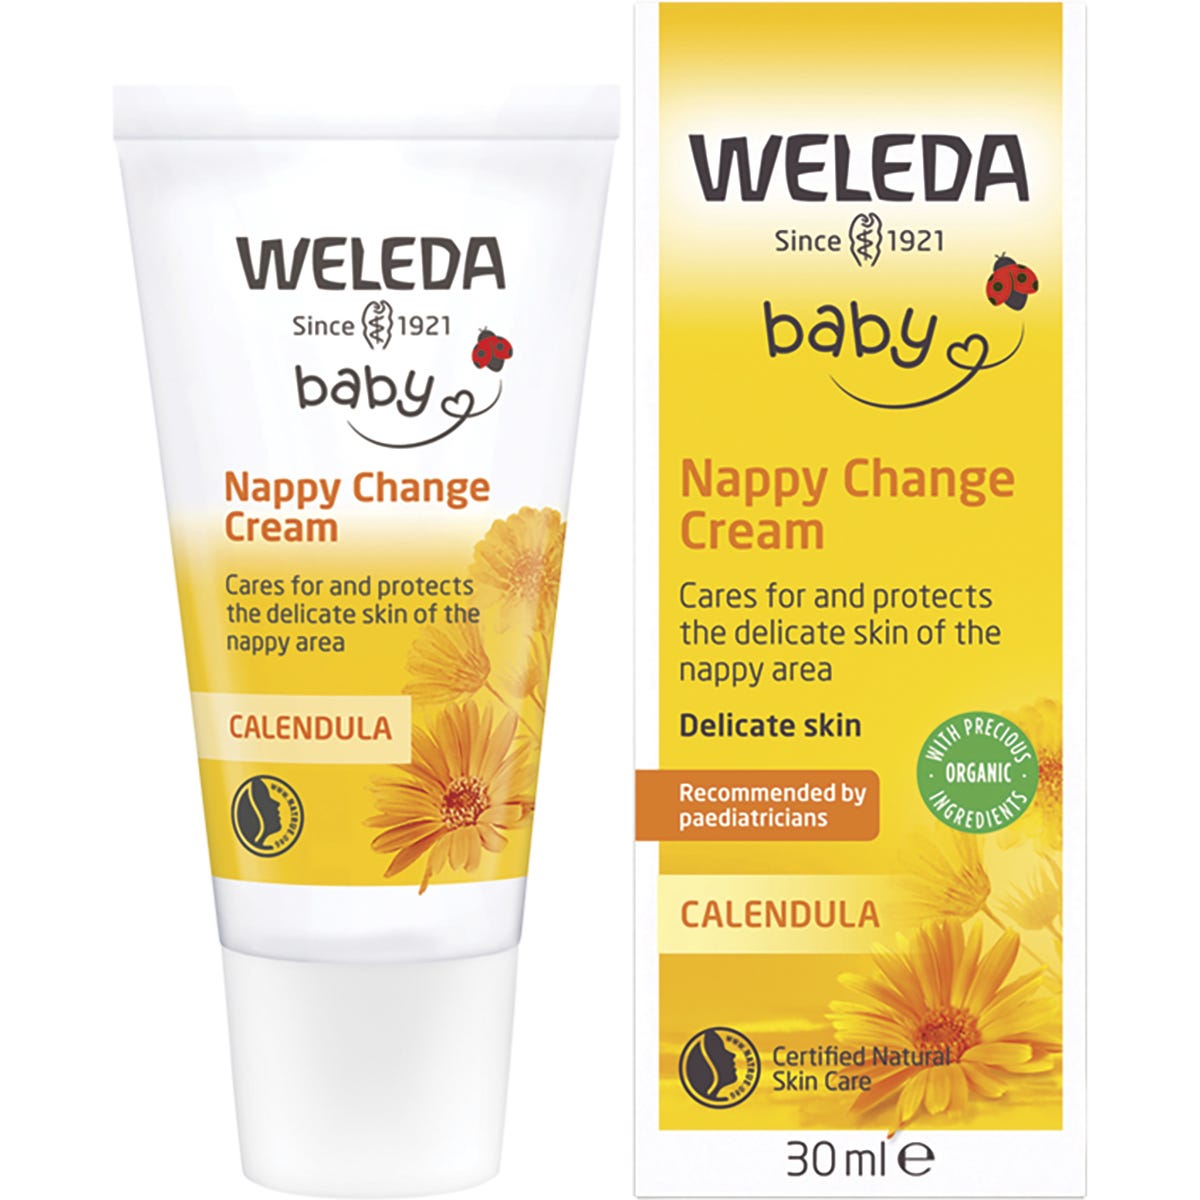 Weleda Calendula Nappy Change Cream Baby 30ml - Dr Earth - Baby & Kids